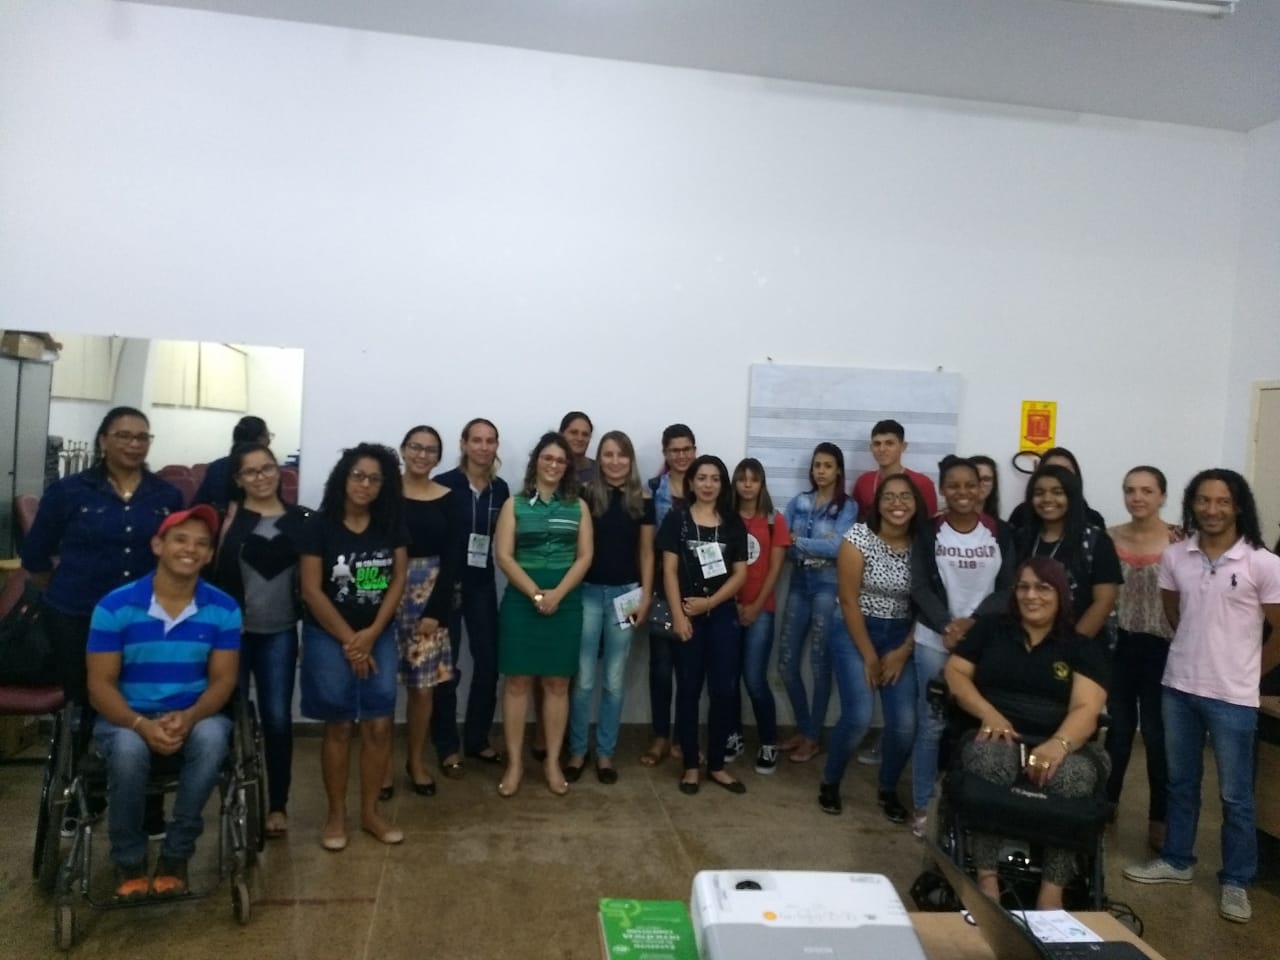 COLÓQUIO DE BIOLOGIA EM COLORADO DO OESTE ABORDA QUESTÕES DE INCLUSÃO SOCIAL - News Rondônia